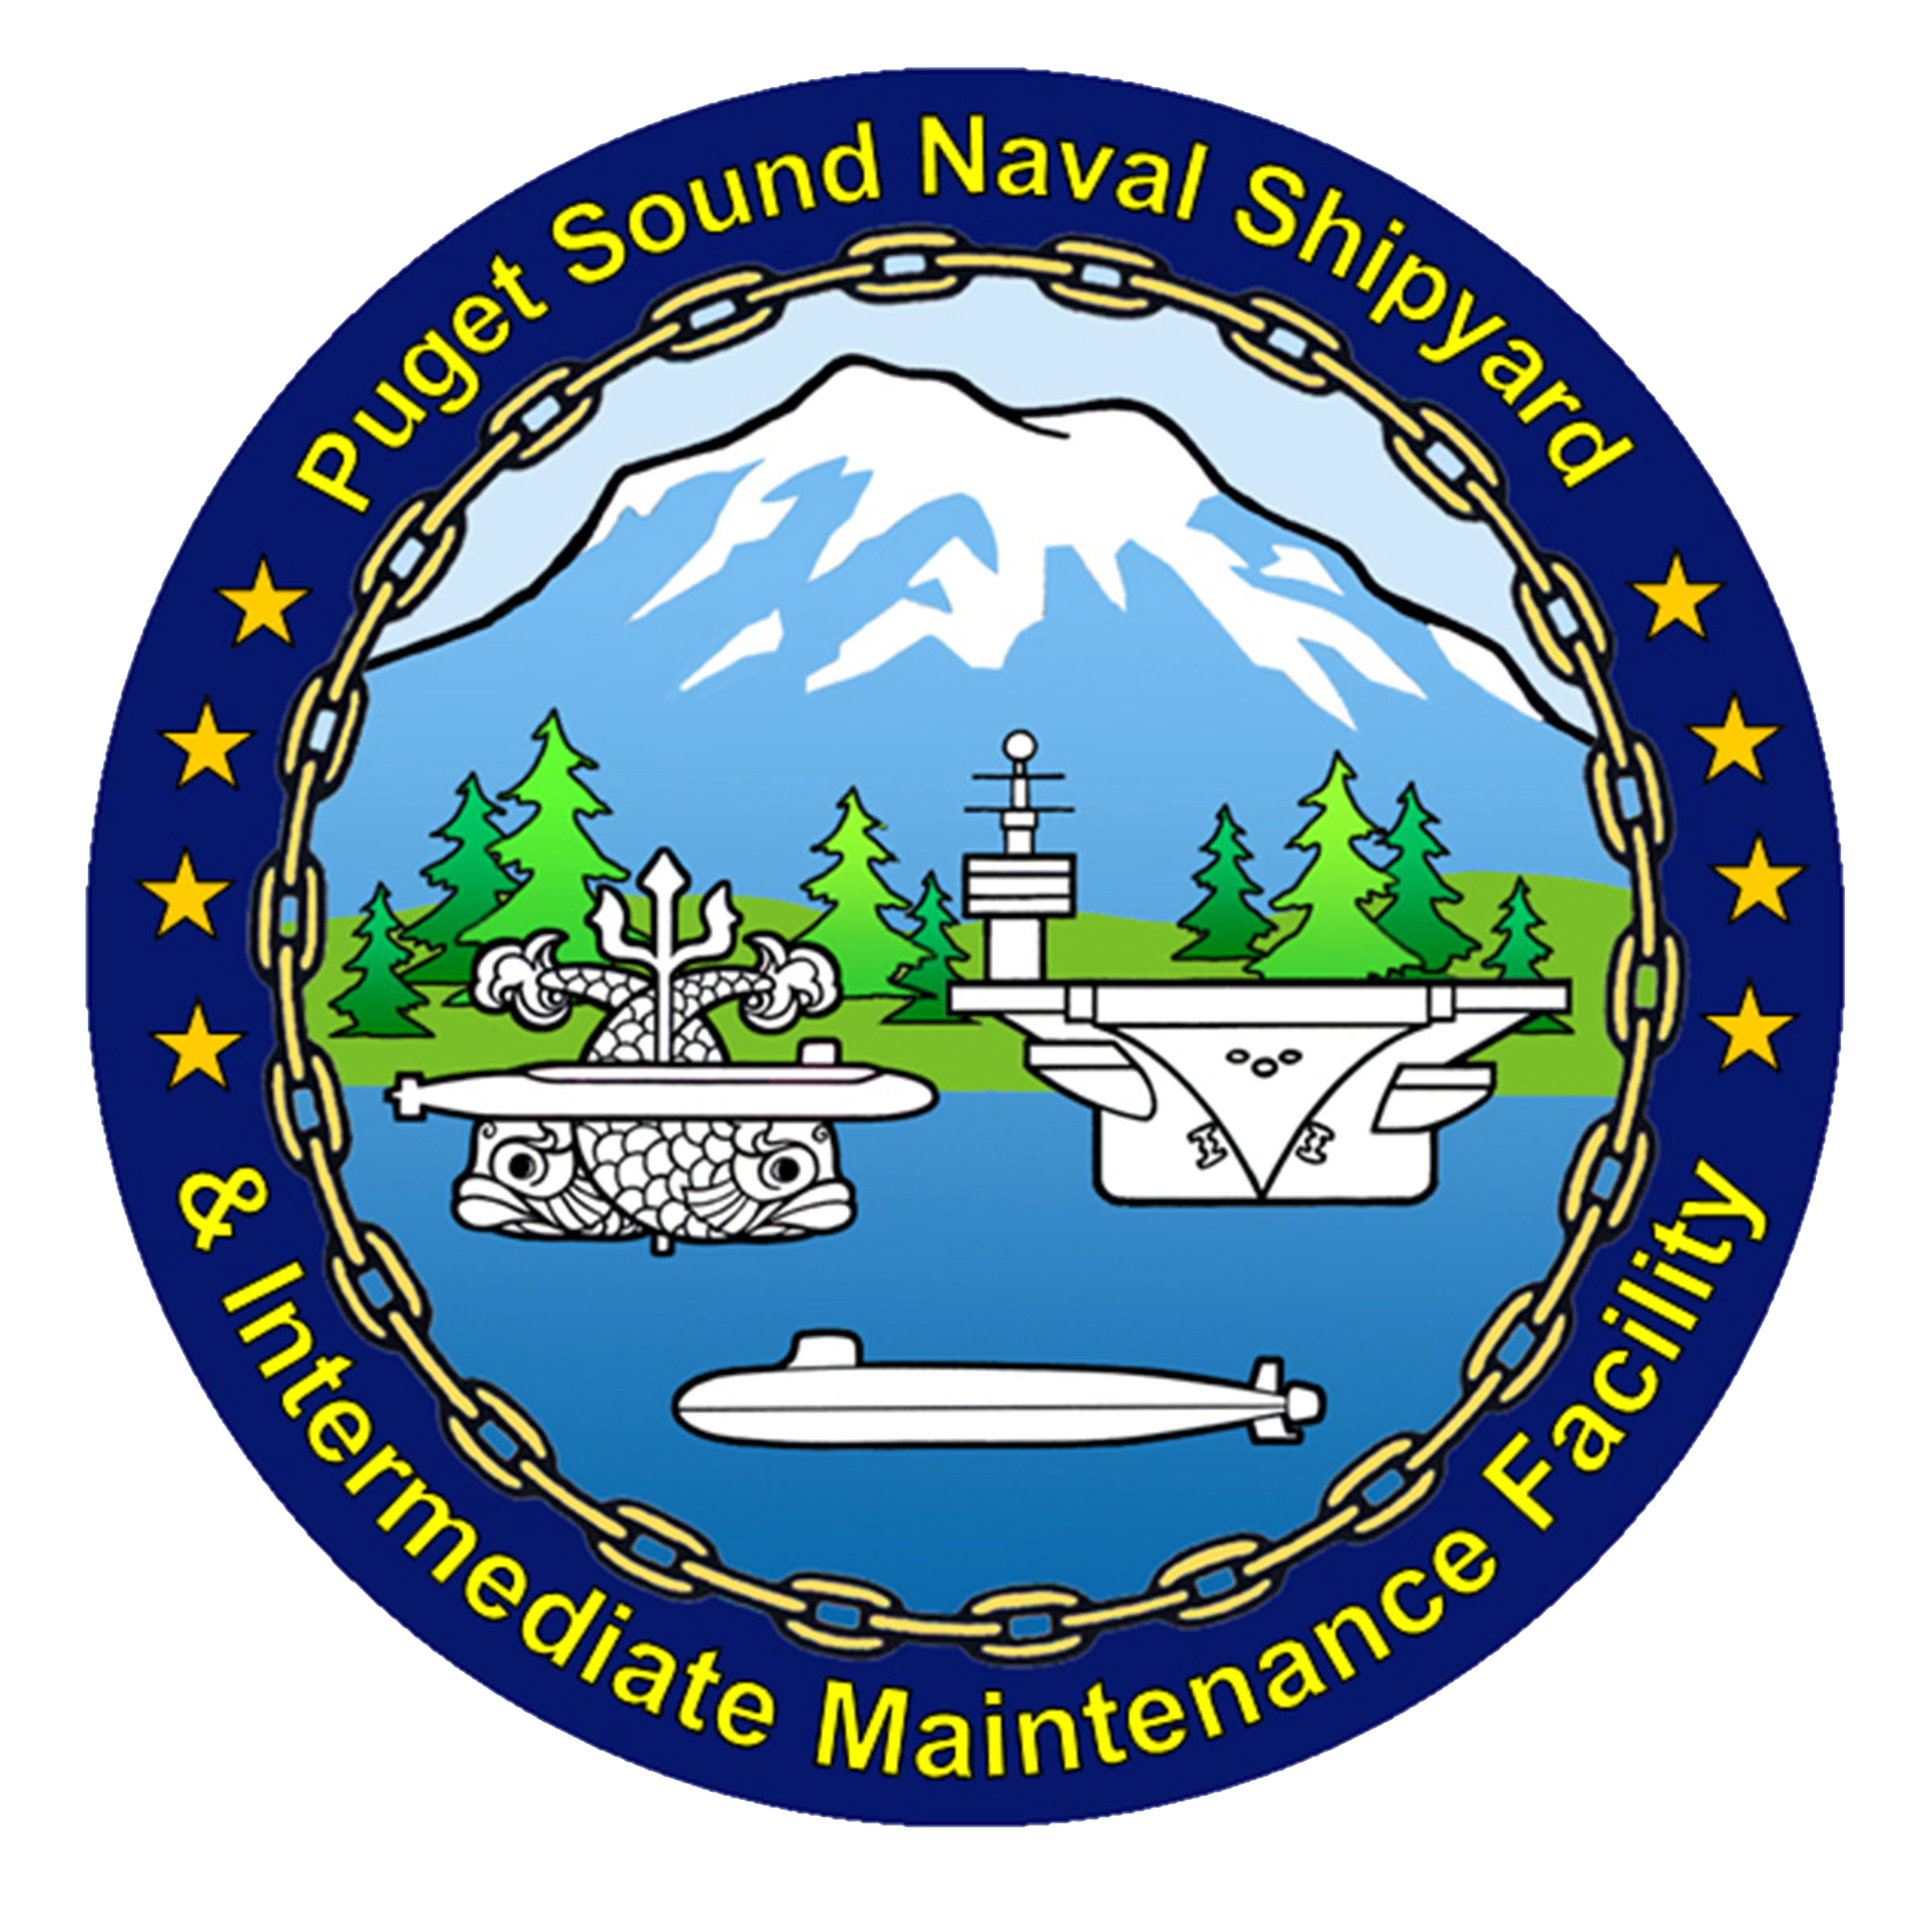 Puget Sound Naval Shipyard.png